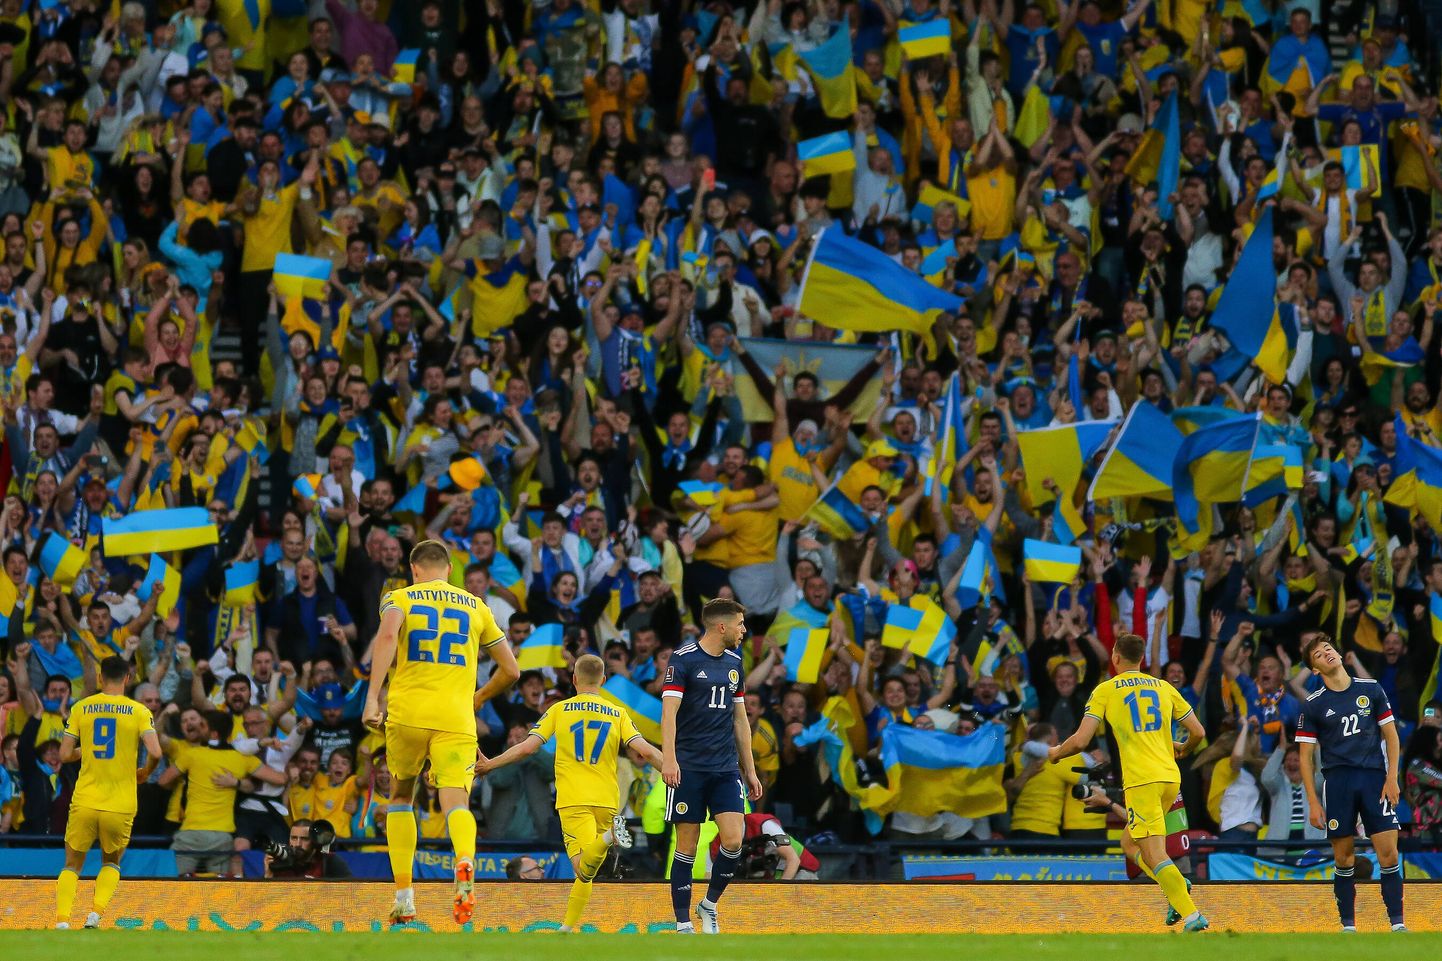 Ukraina jalgpallikoondis alistas 1. juunil 2022 Glasgow's Šotimaa koondise ja on ühe mängu kaugusel Kataris toimuvatele jalgpalli maailmameistrivõistlustele jõudmisest. Ukraina peab selleks alistama 5. juunil 2022 Cardiffis Walesi